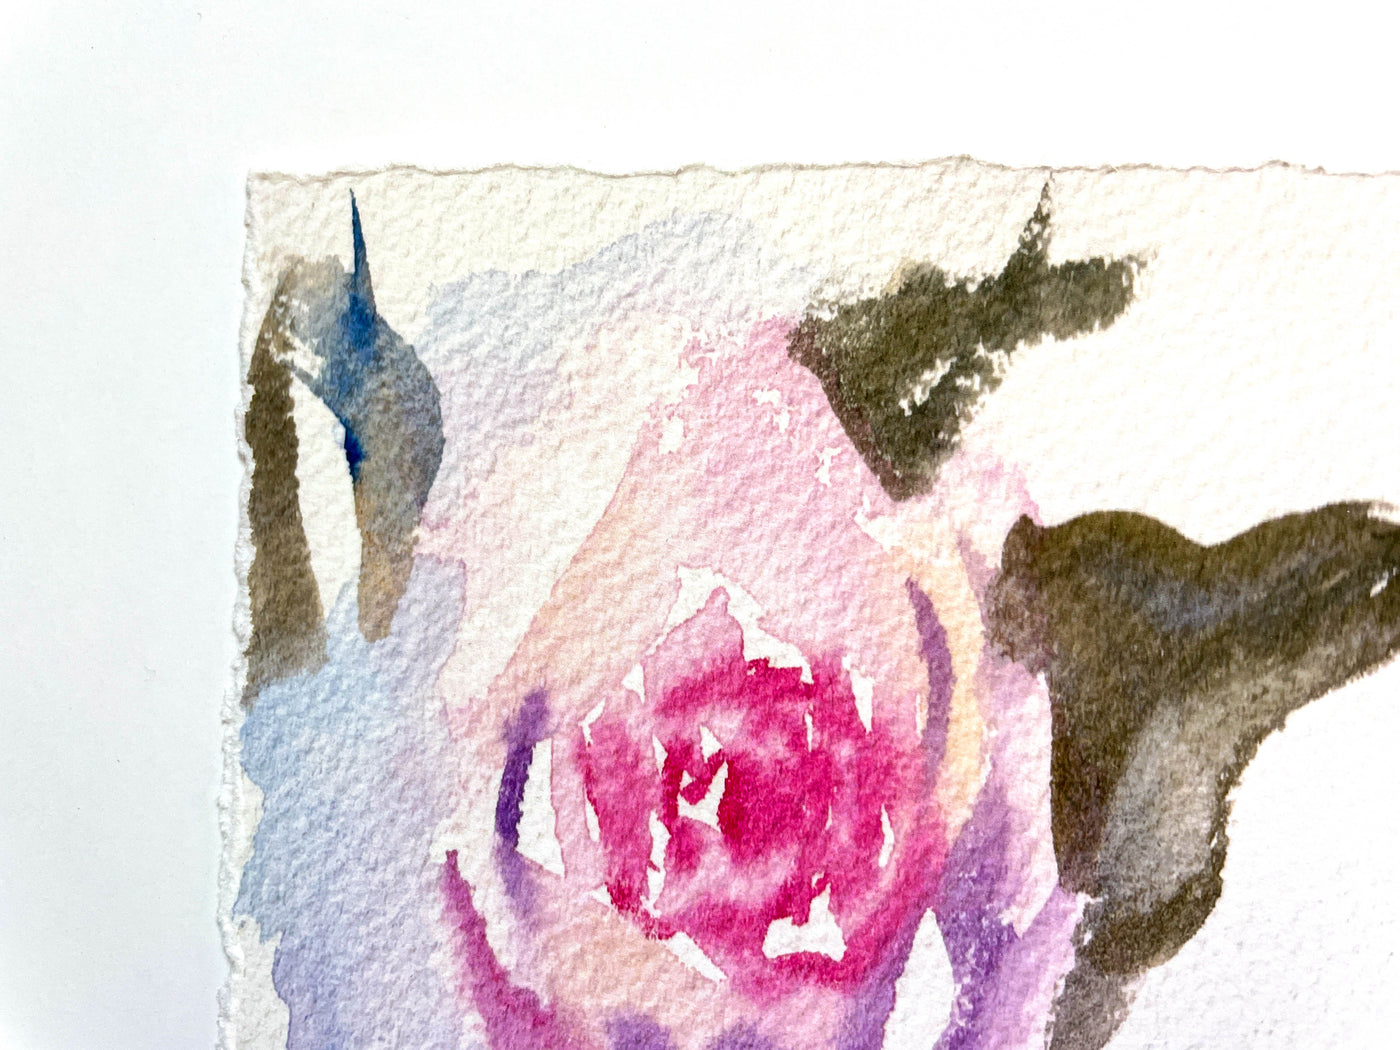 Rose Study Watercolor Art Print